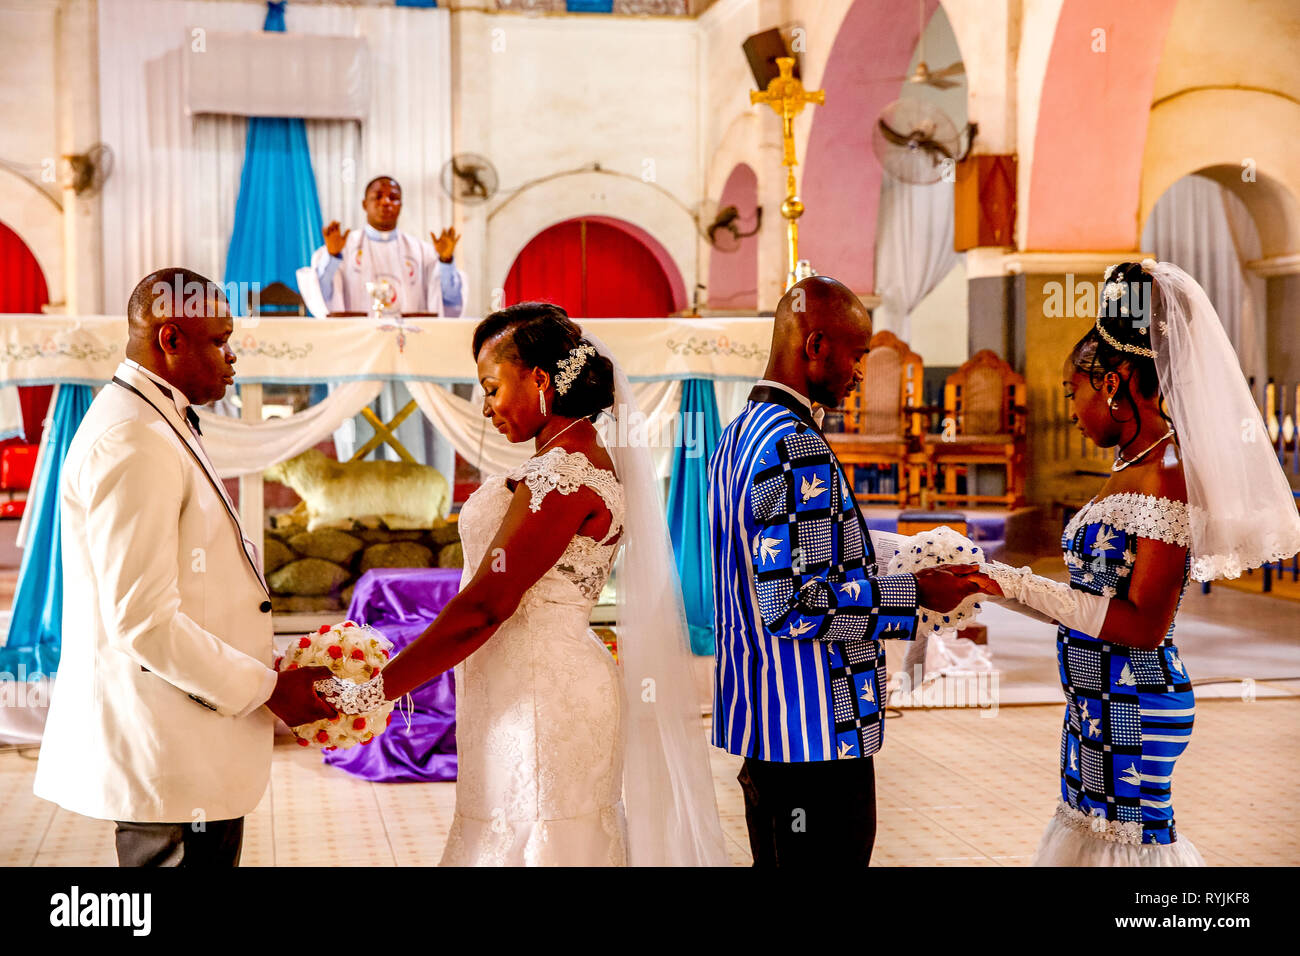 Weddings in Ouagadougou's catholic cathedral, Burkina Faso. Stock Photo